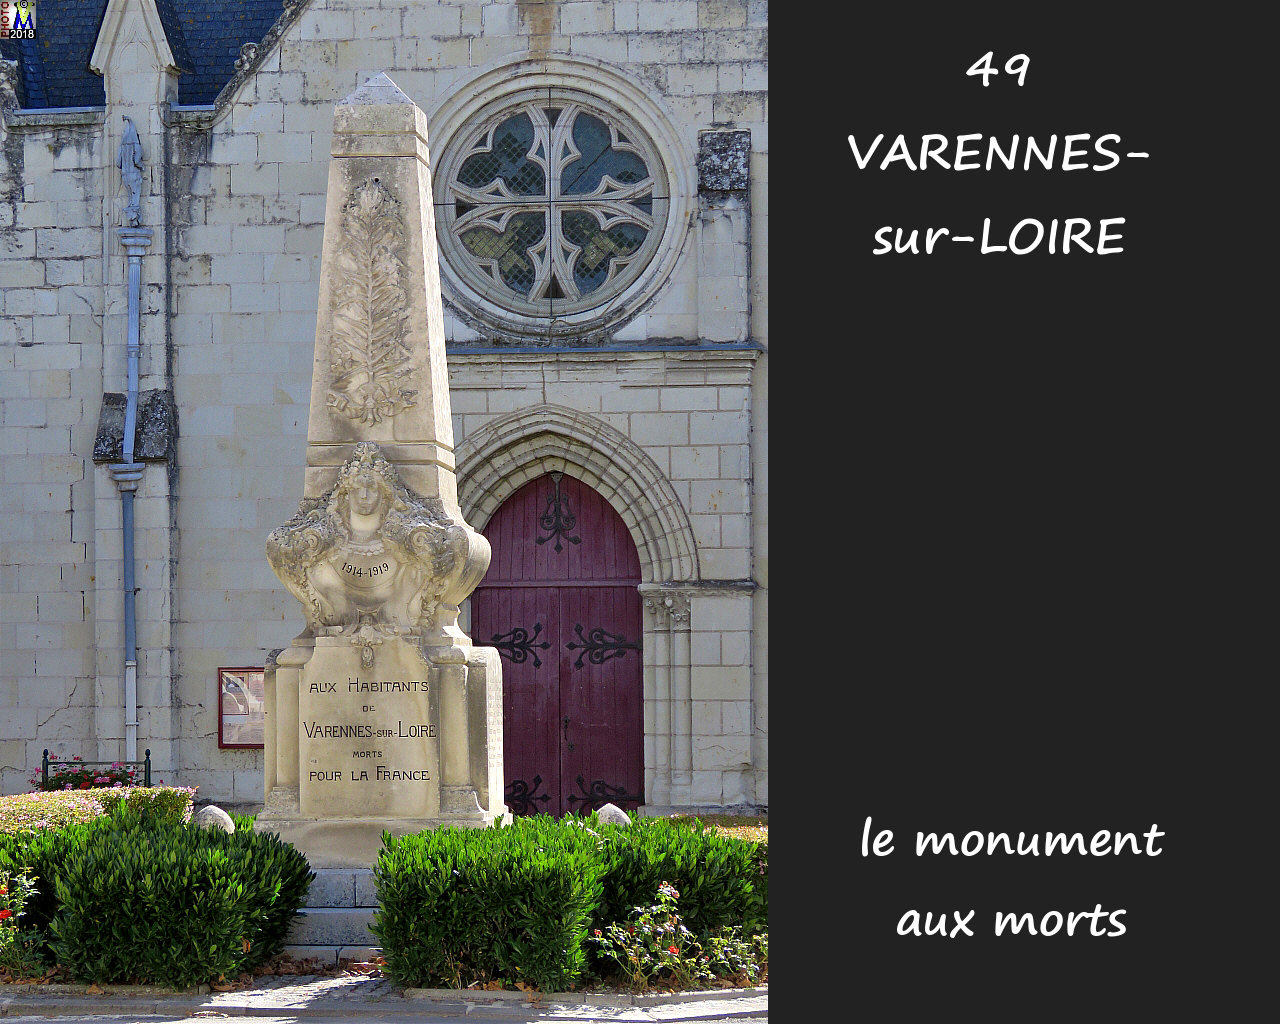 49VARENNES-LOIRE_morts_1000.jpg